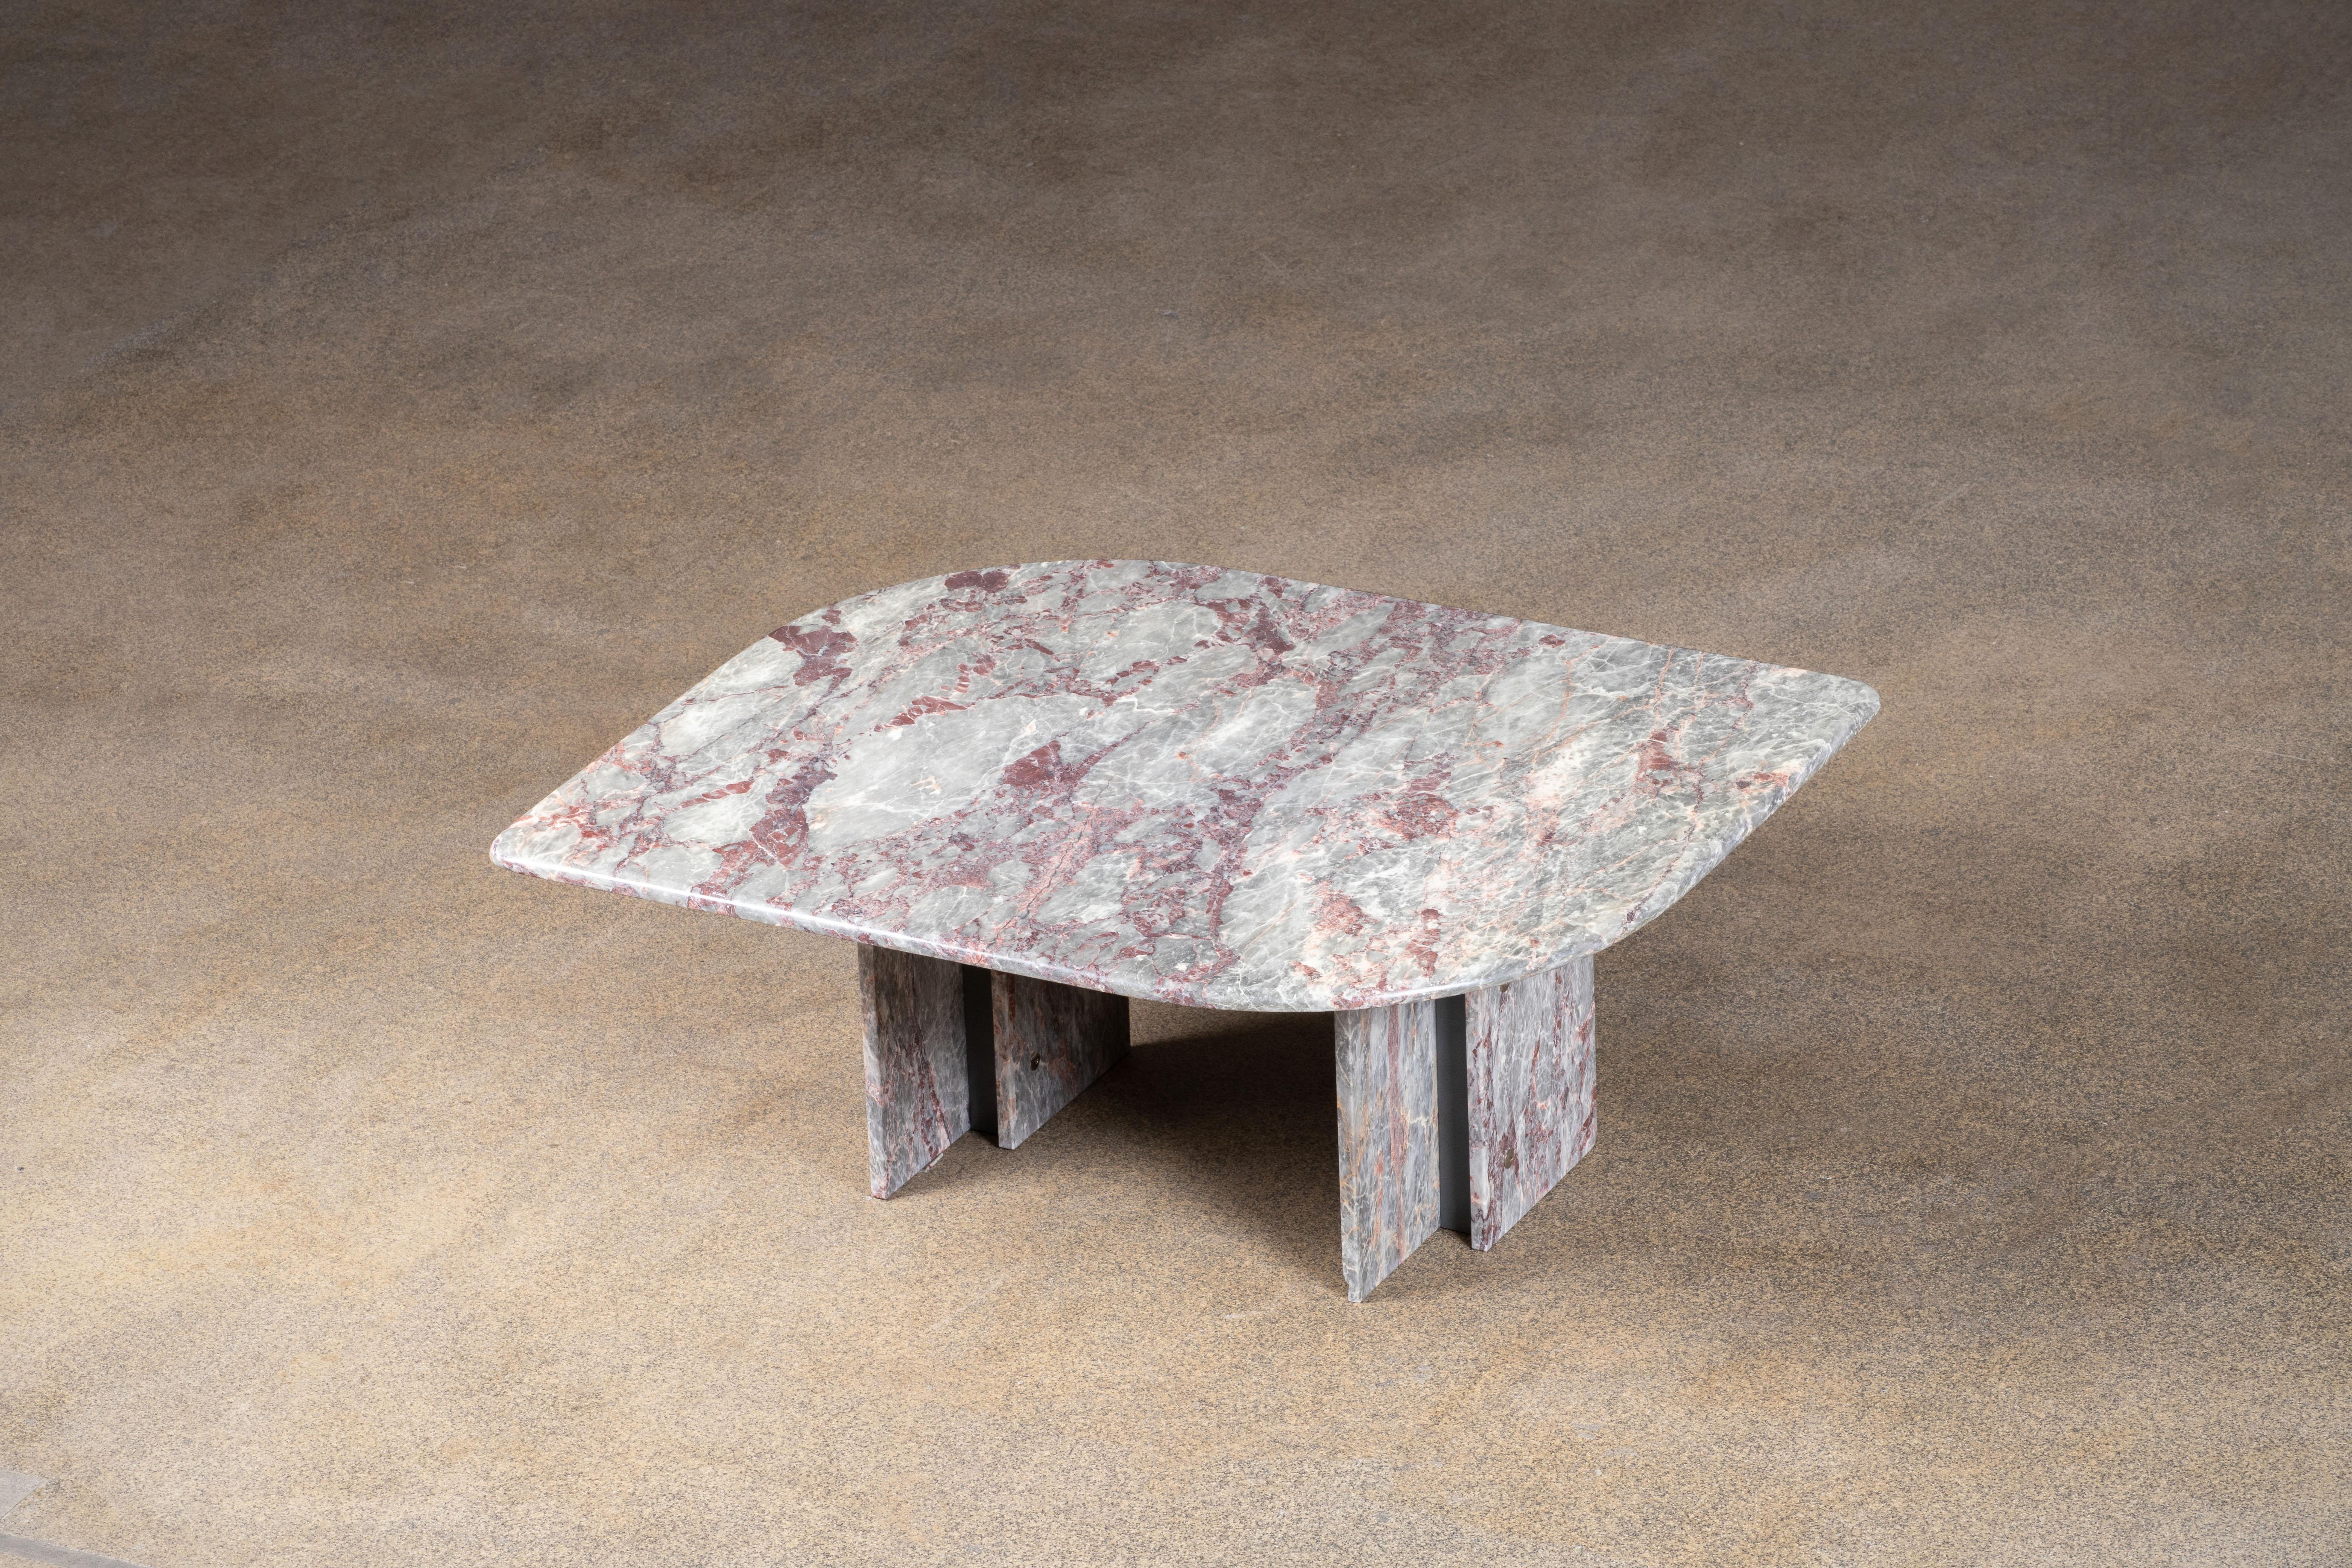 Schöner Tisch aus grauem, weißem und rosa Marmor.

Die schwere, augenförmige Platte ruht auf zwei Marmorblöcken mit einer Metallstruktur dazwischen.

Dieser Tisch sticht wirklich hervor.

